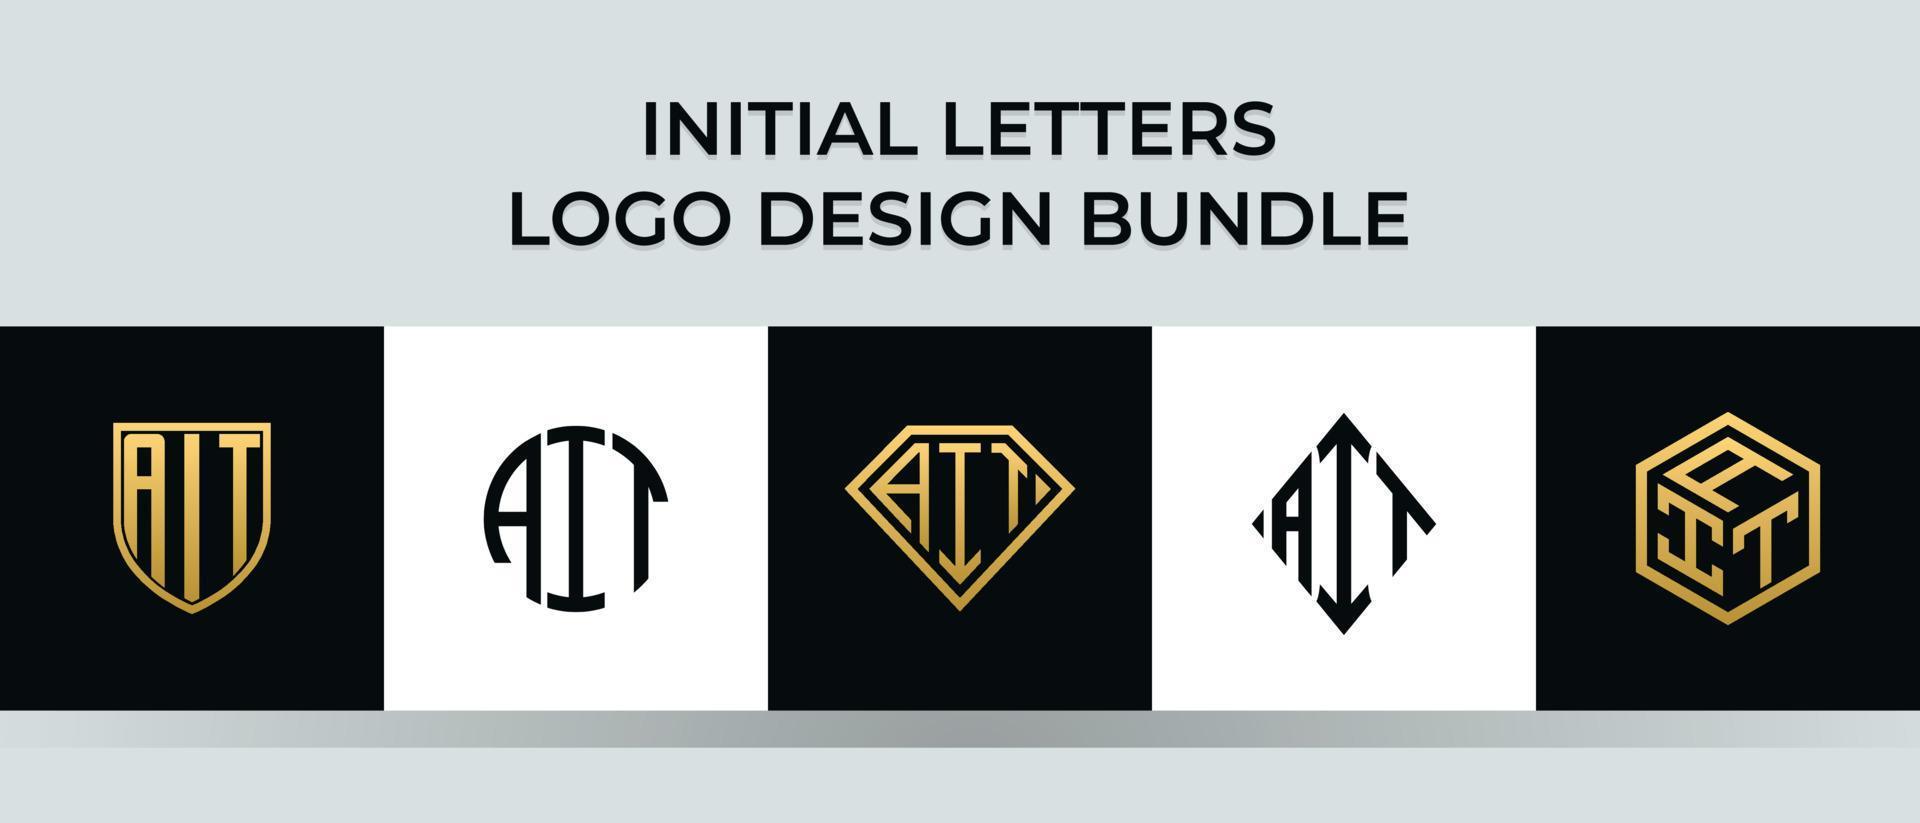 Initial letters AIT logo designs Bundle vector